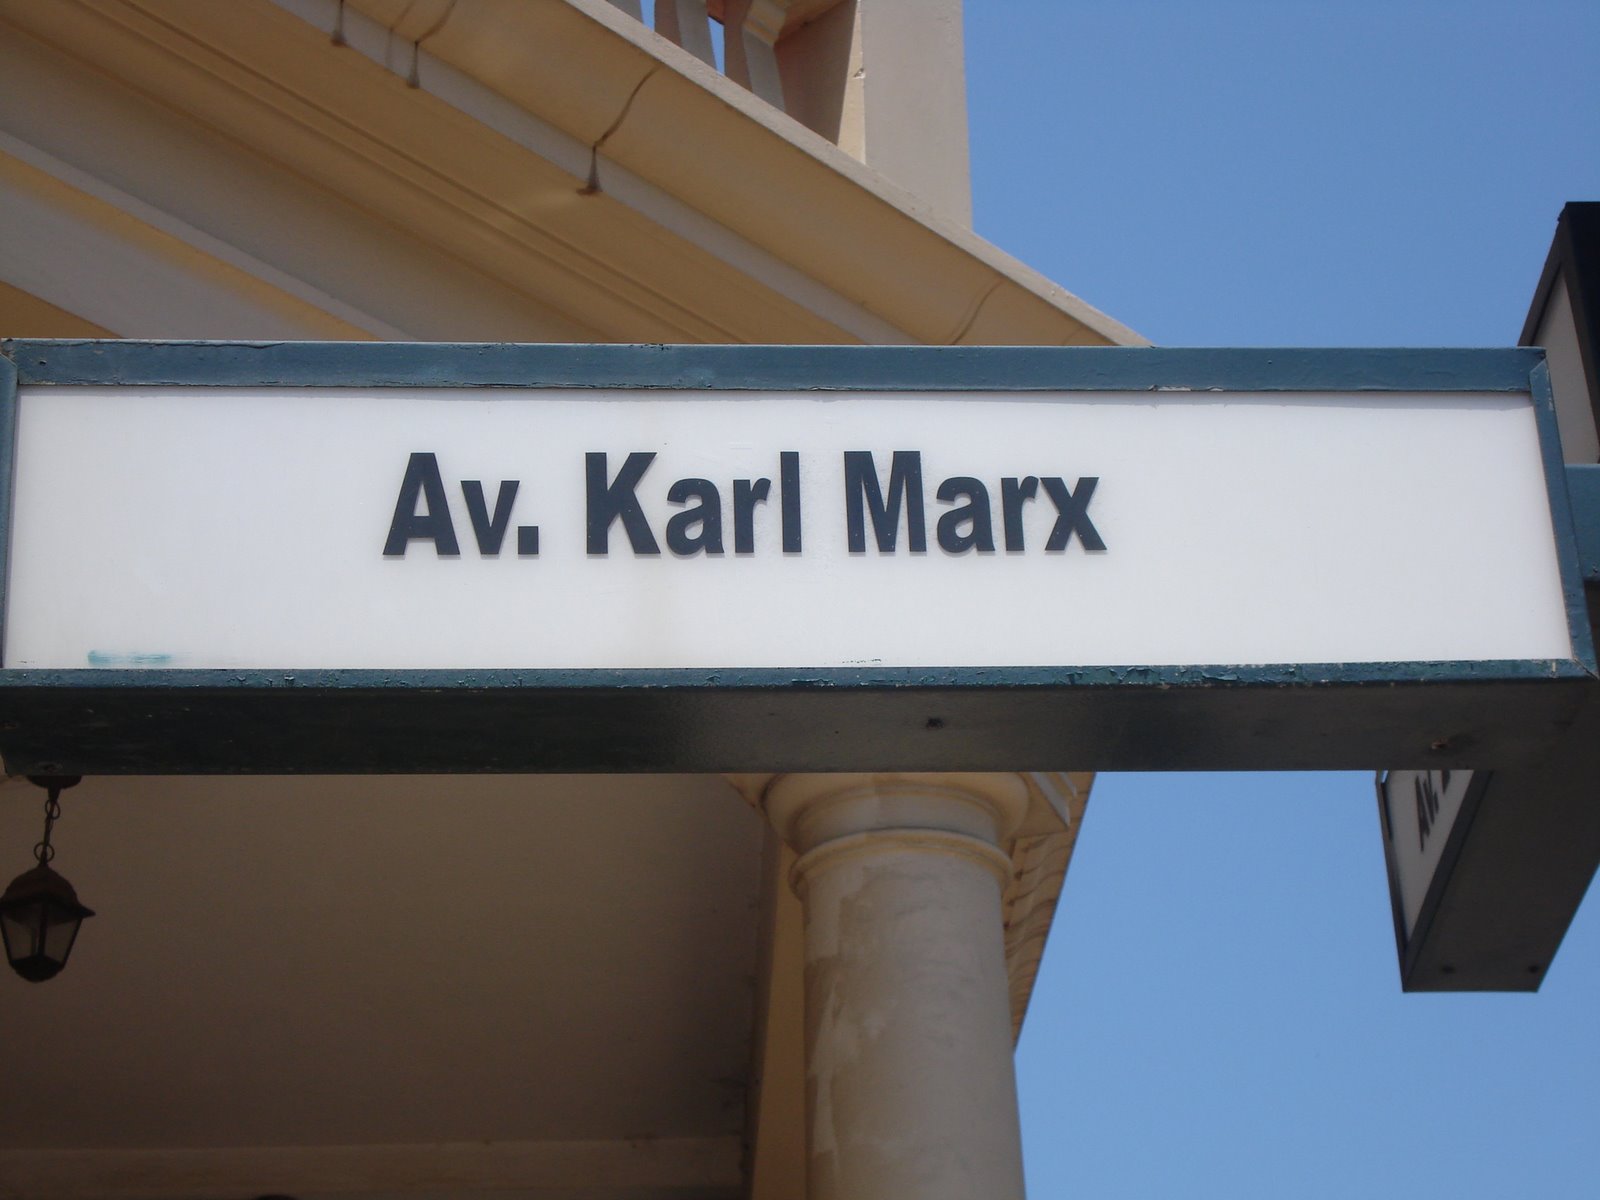 Avenida Karl Marx